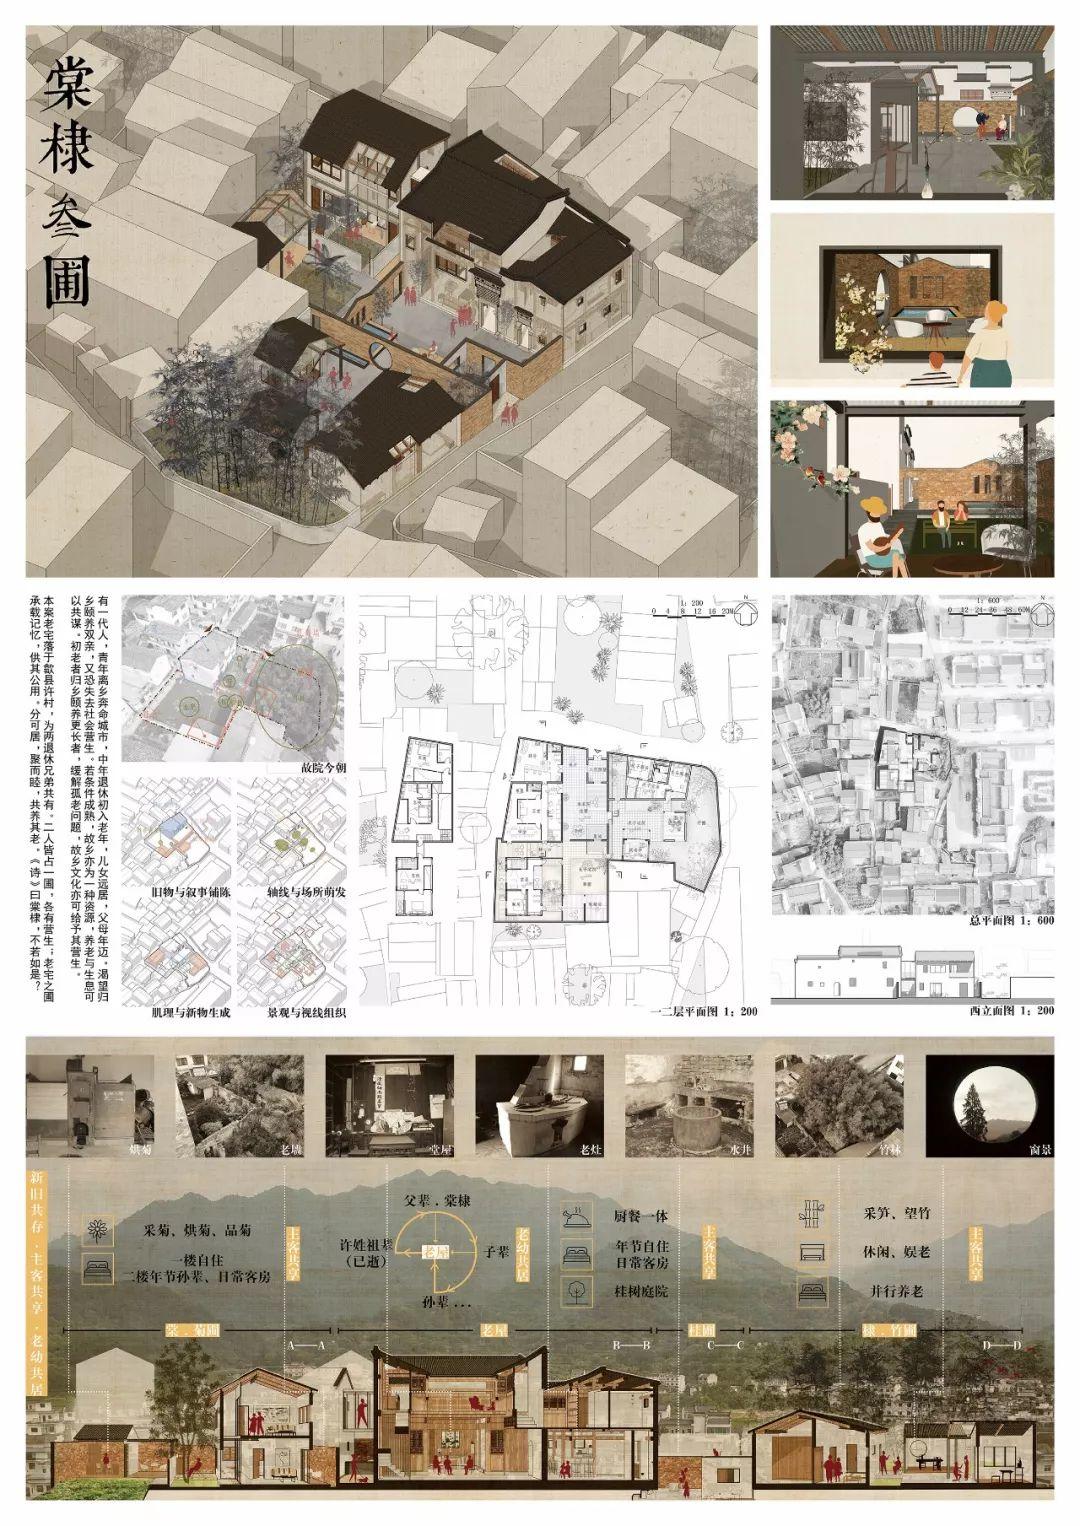 入围名单 |《建筑师》杂志·2019“天作奖”国际大学生建筑设计竞赛